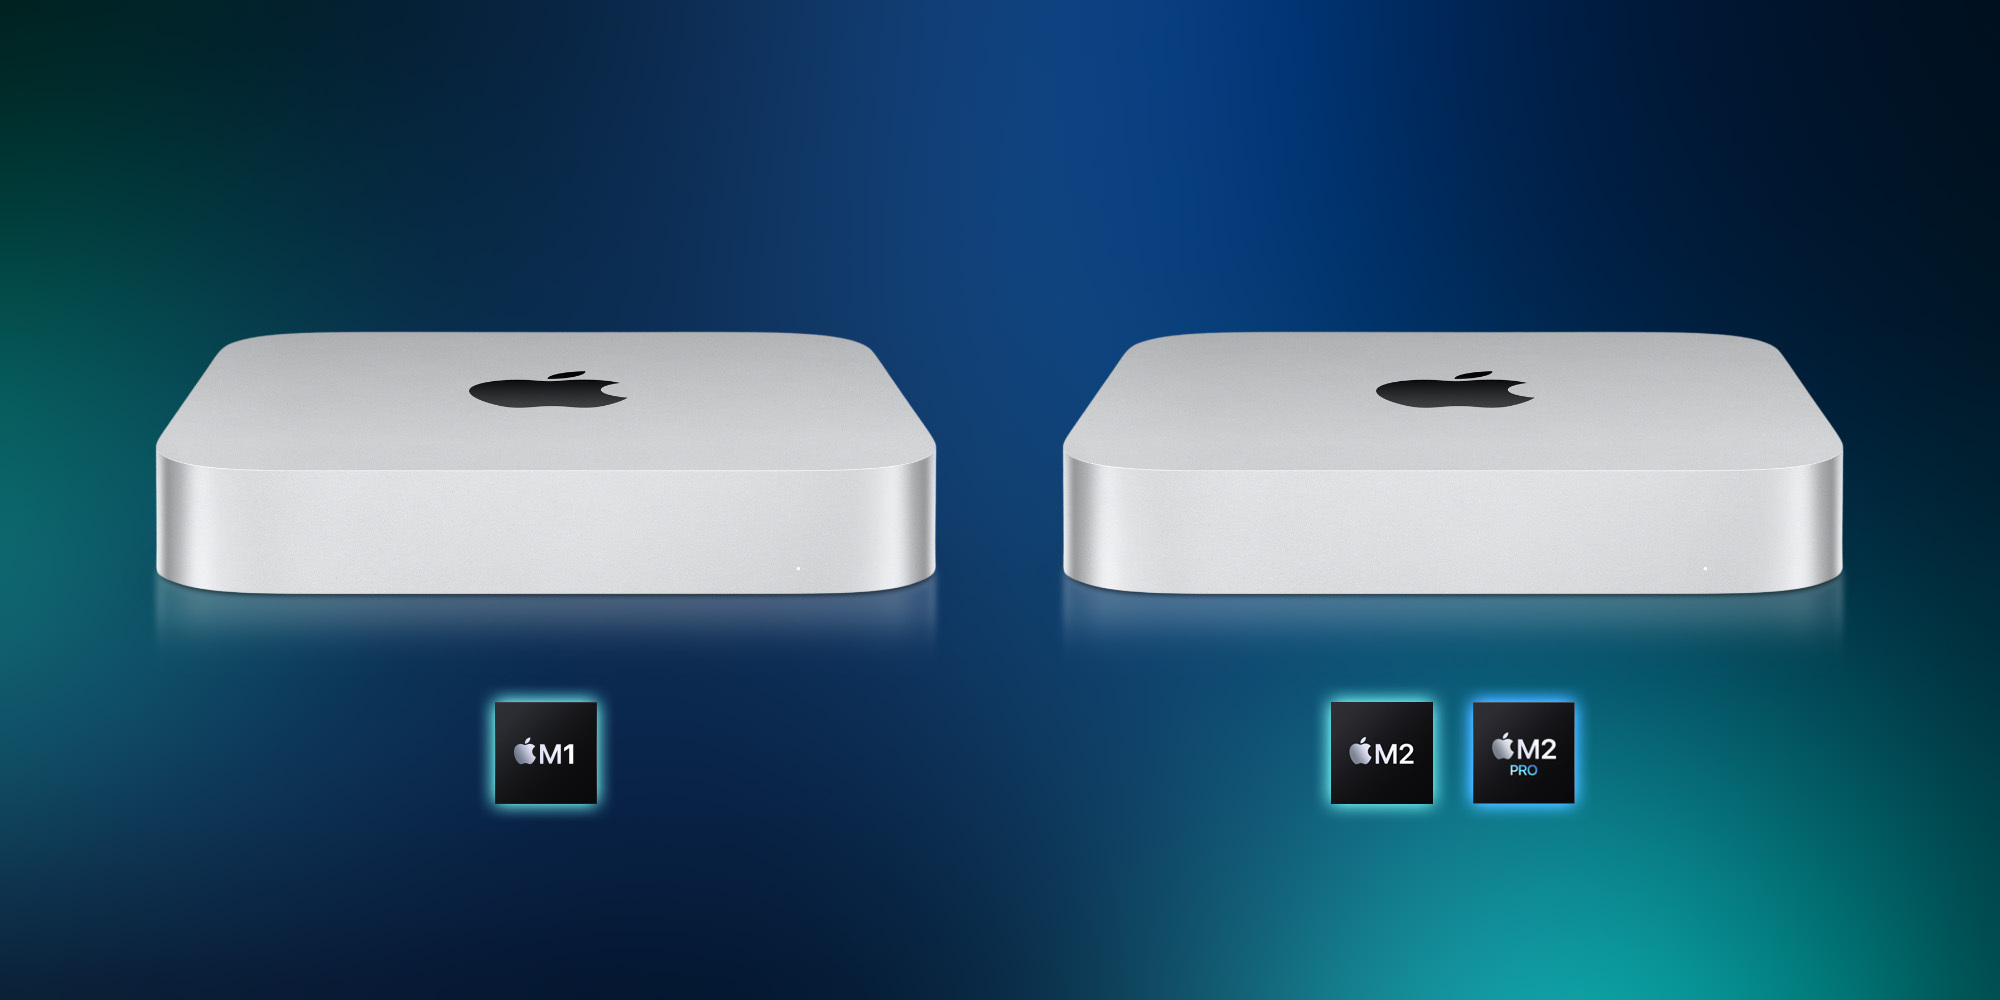 Mac mini comparison: M2 and M2 Pro vs M1 - 9to5Mac